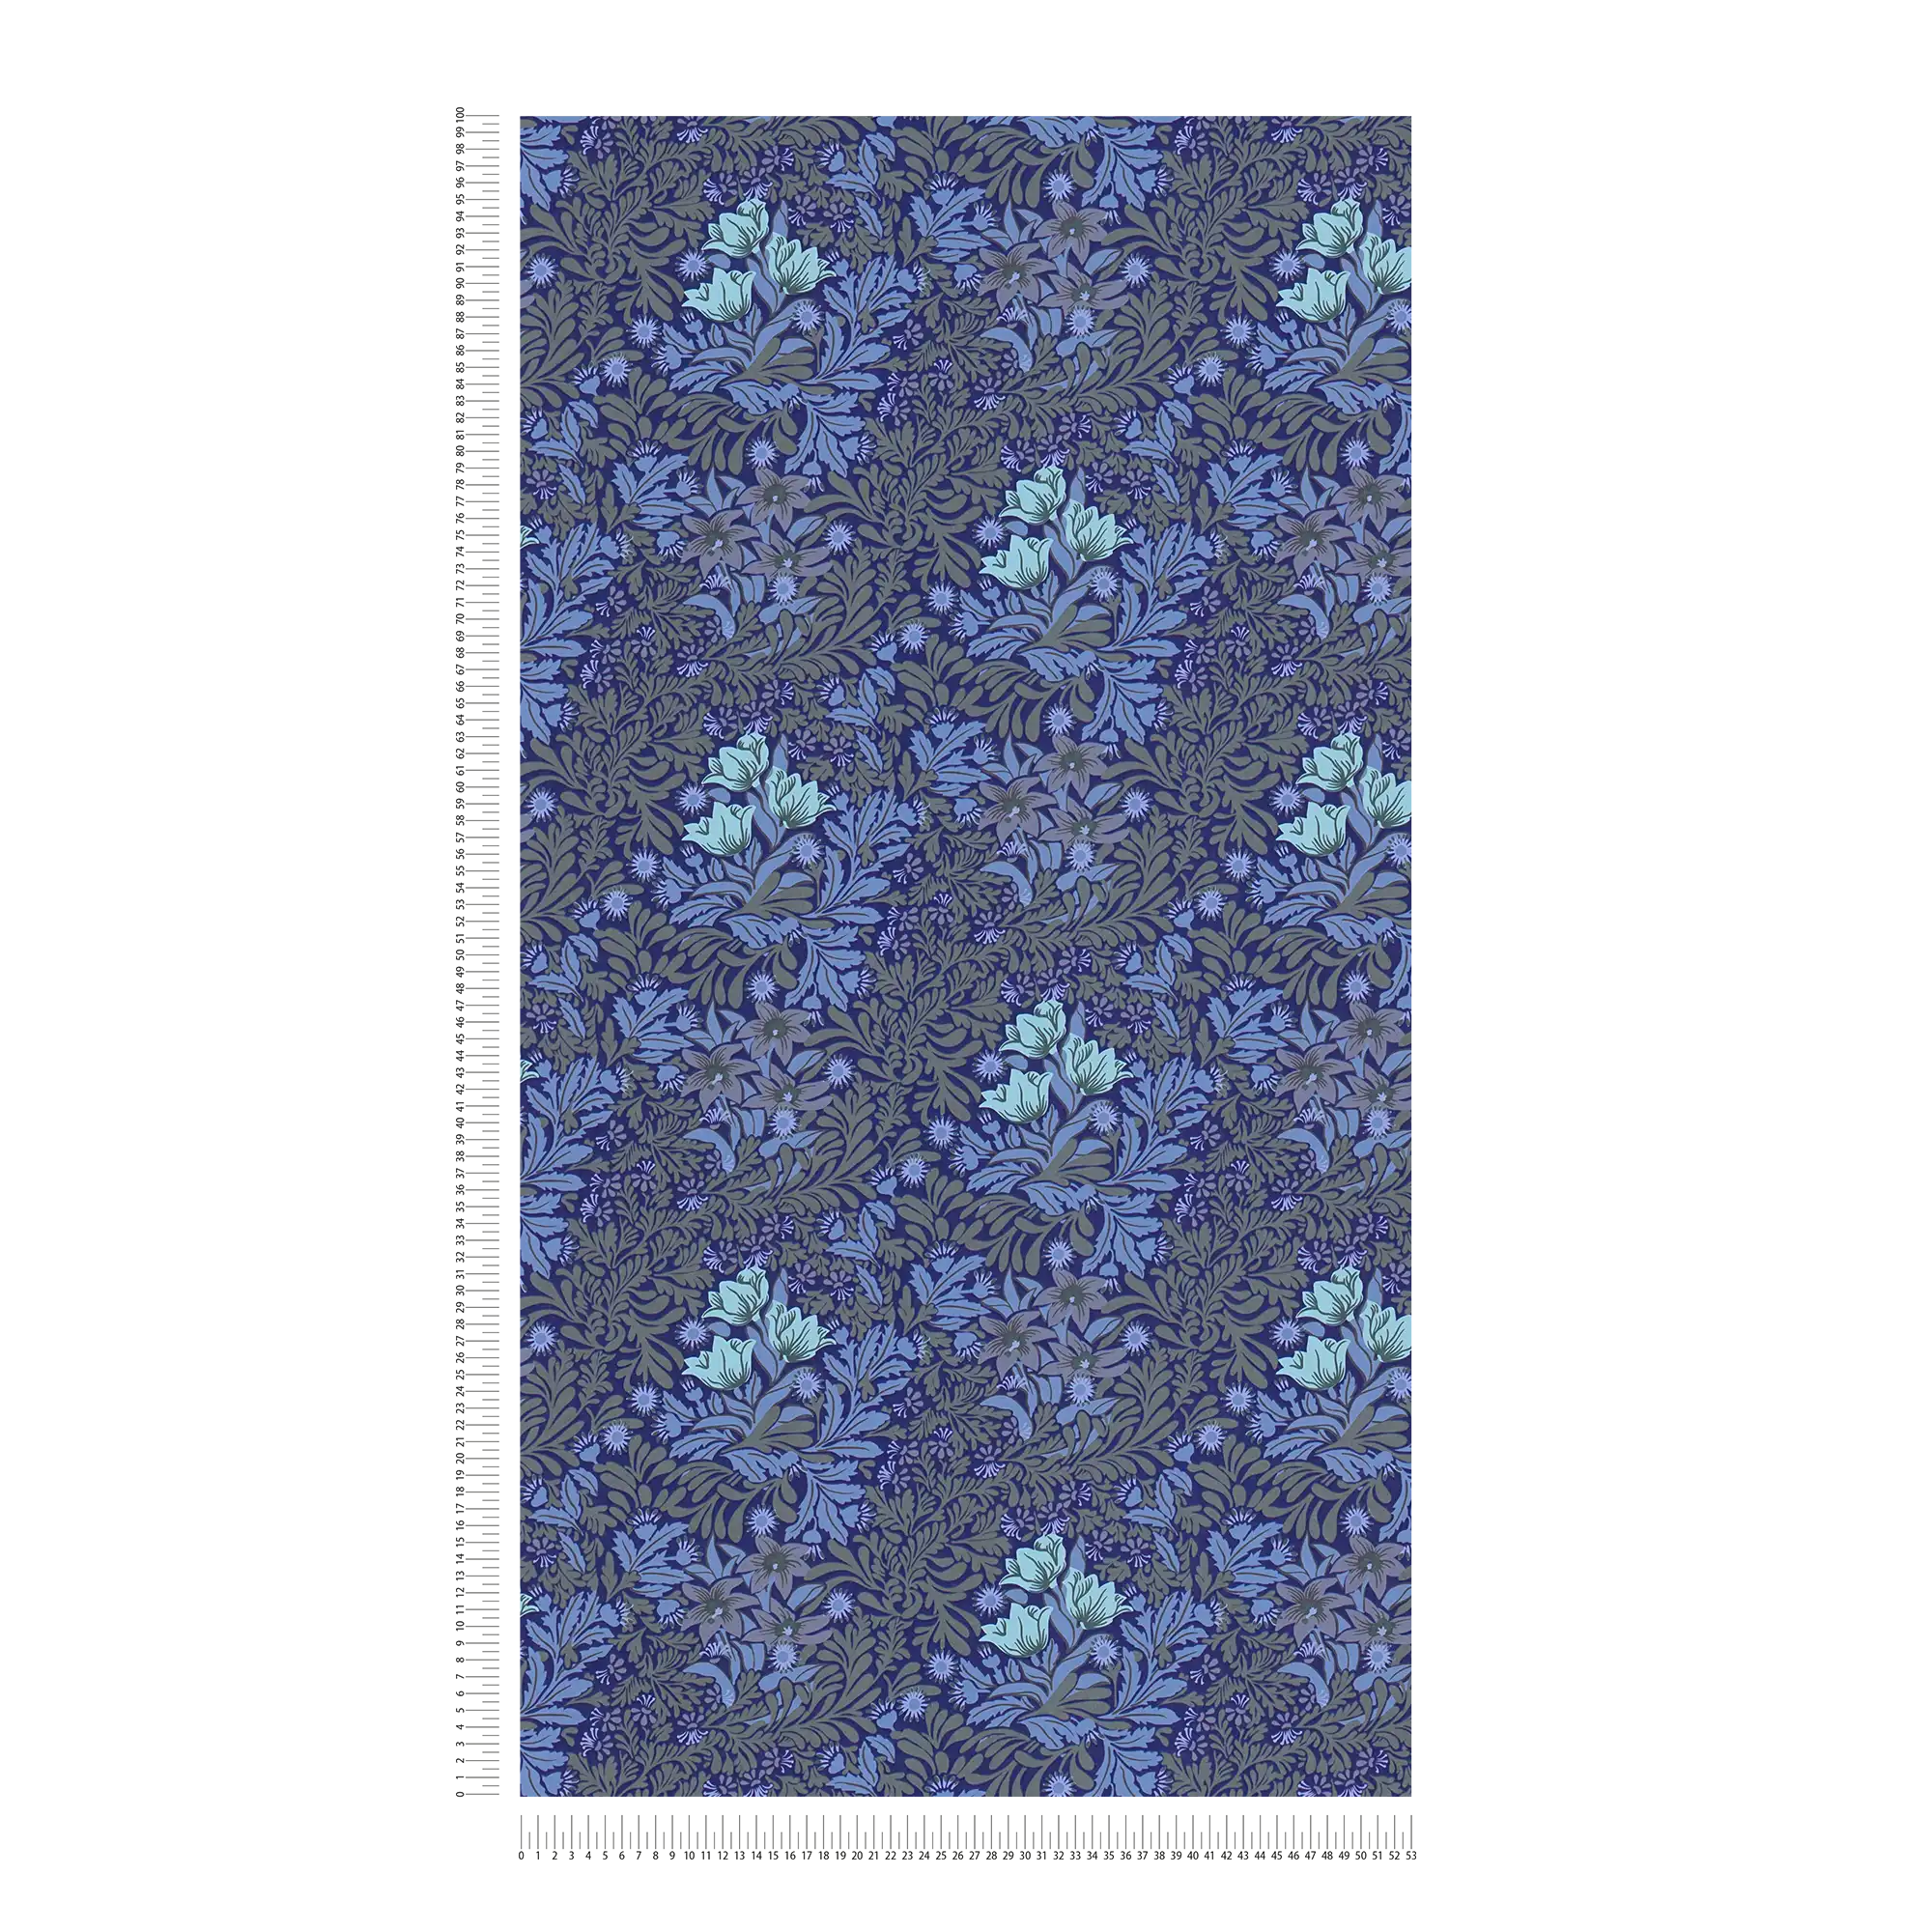             Bloemrijkvliesbehang met bladranken en bloemen - blauw, grijs, groen
        